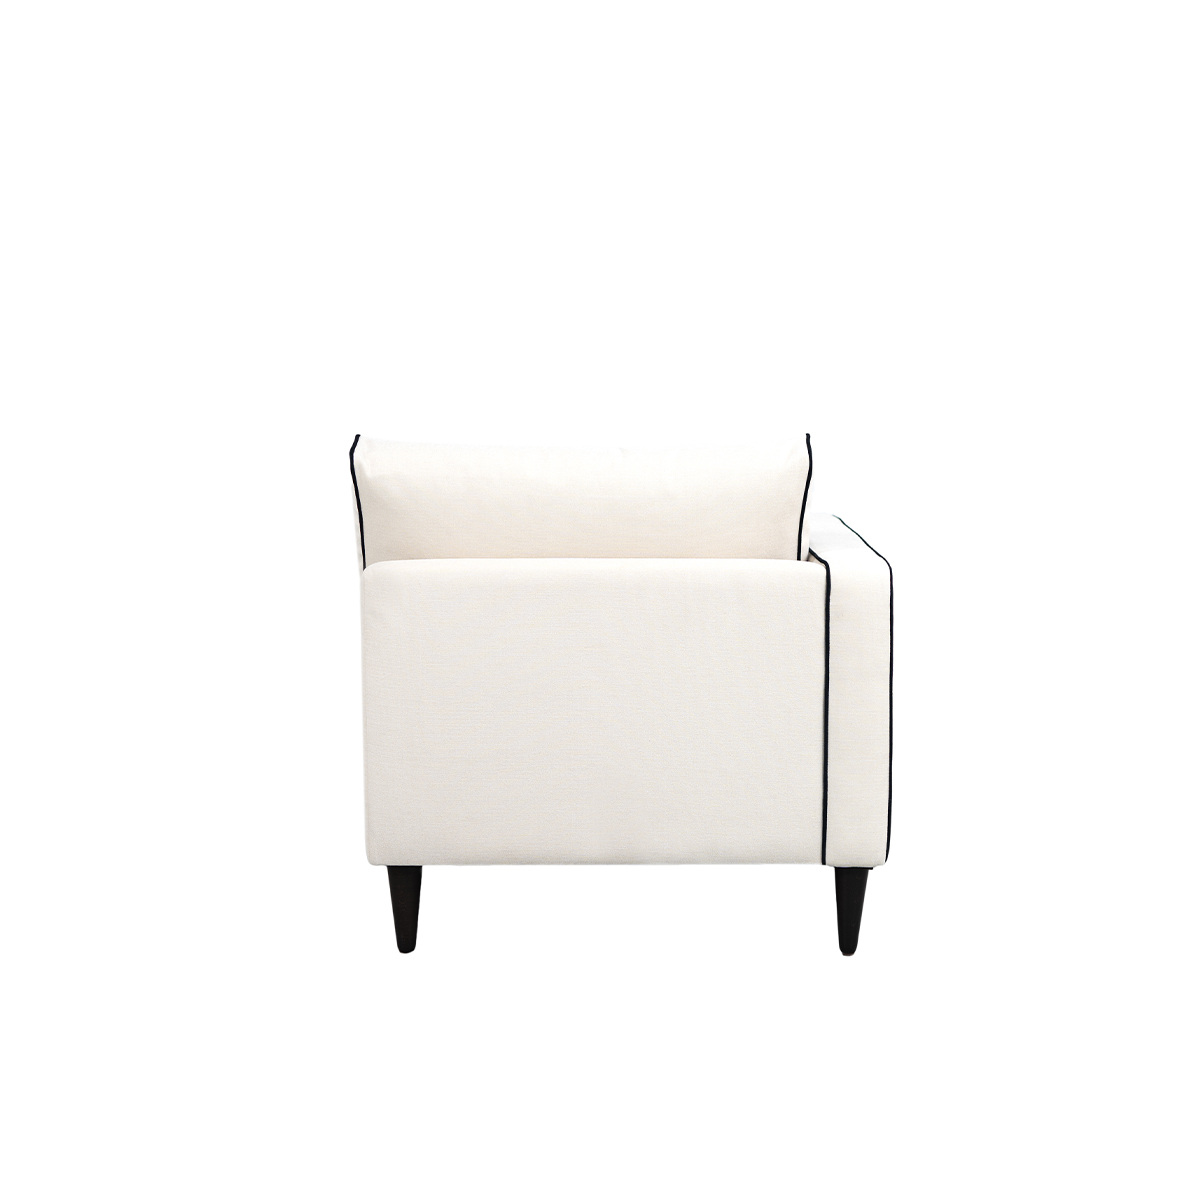 Noa sofa - Left armrest, L180 x P90 x H80 cm - Cotton - image 6